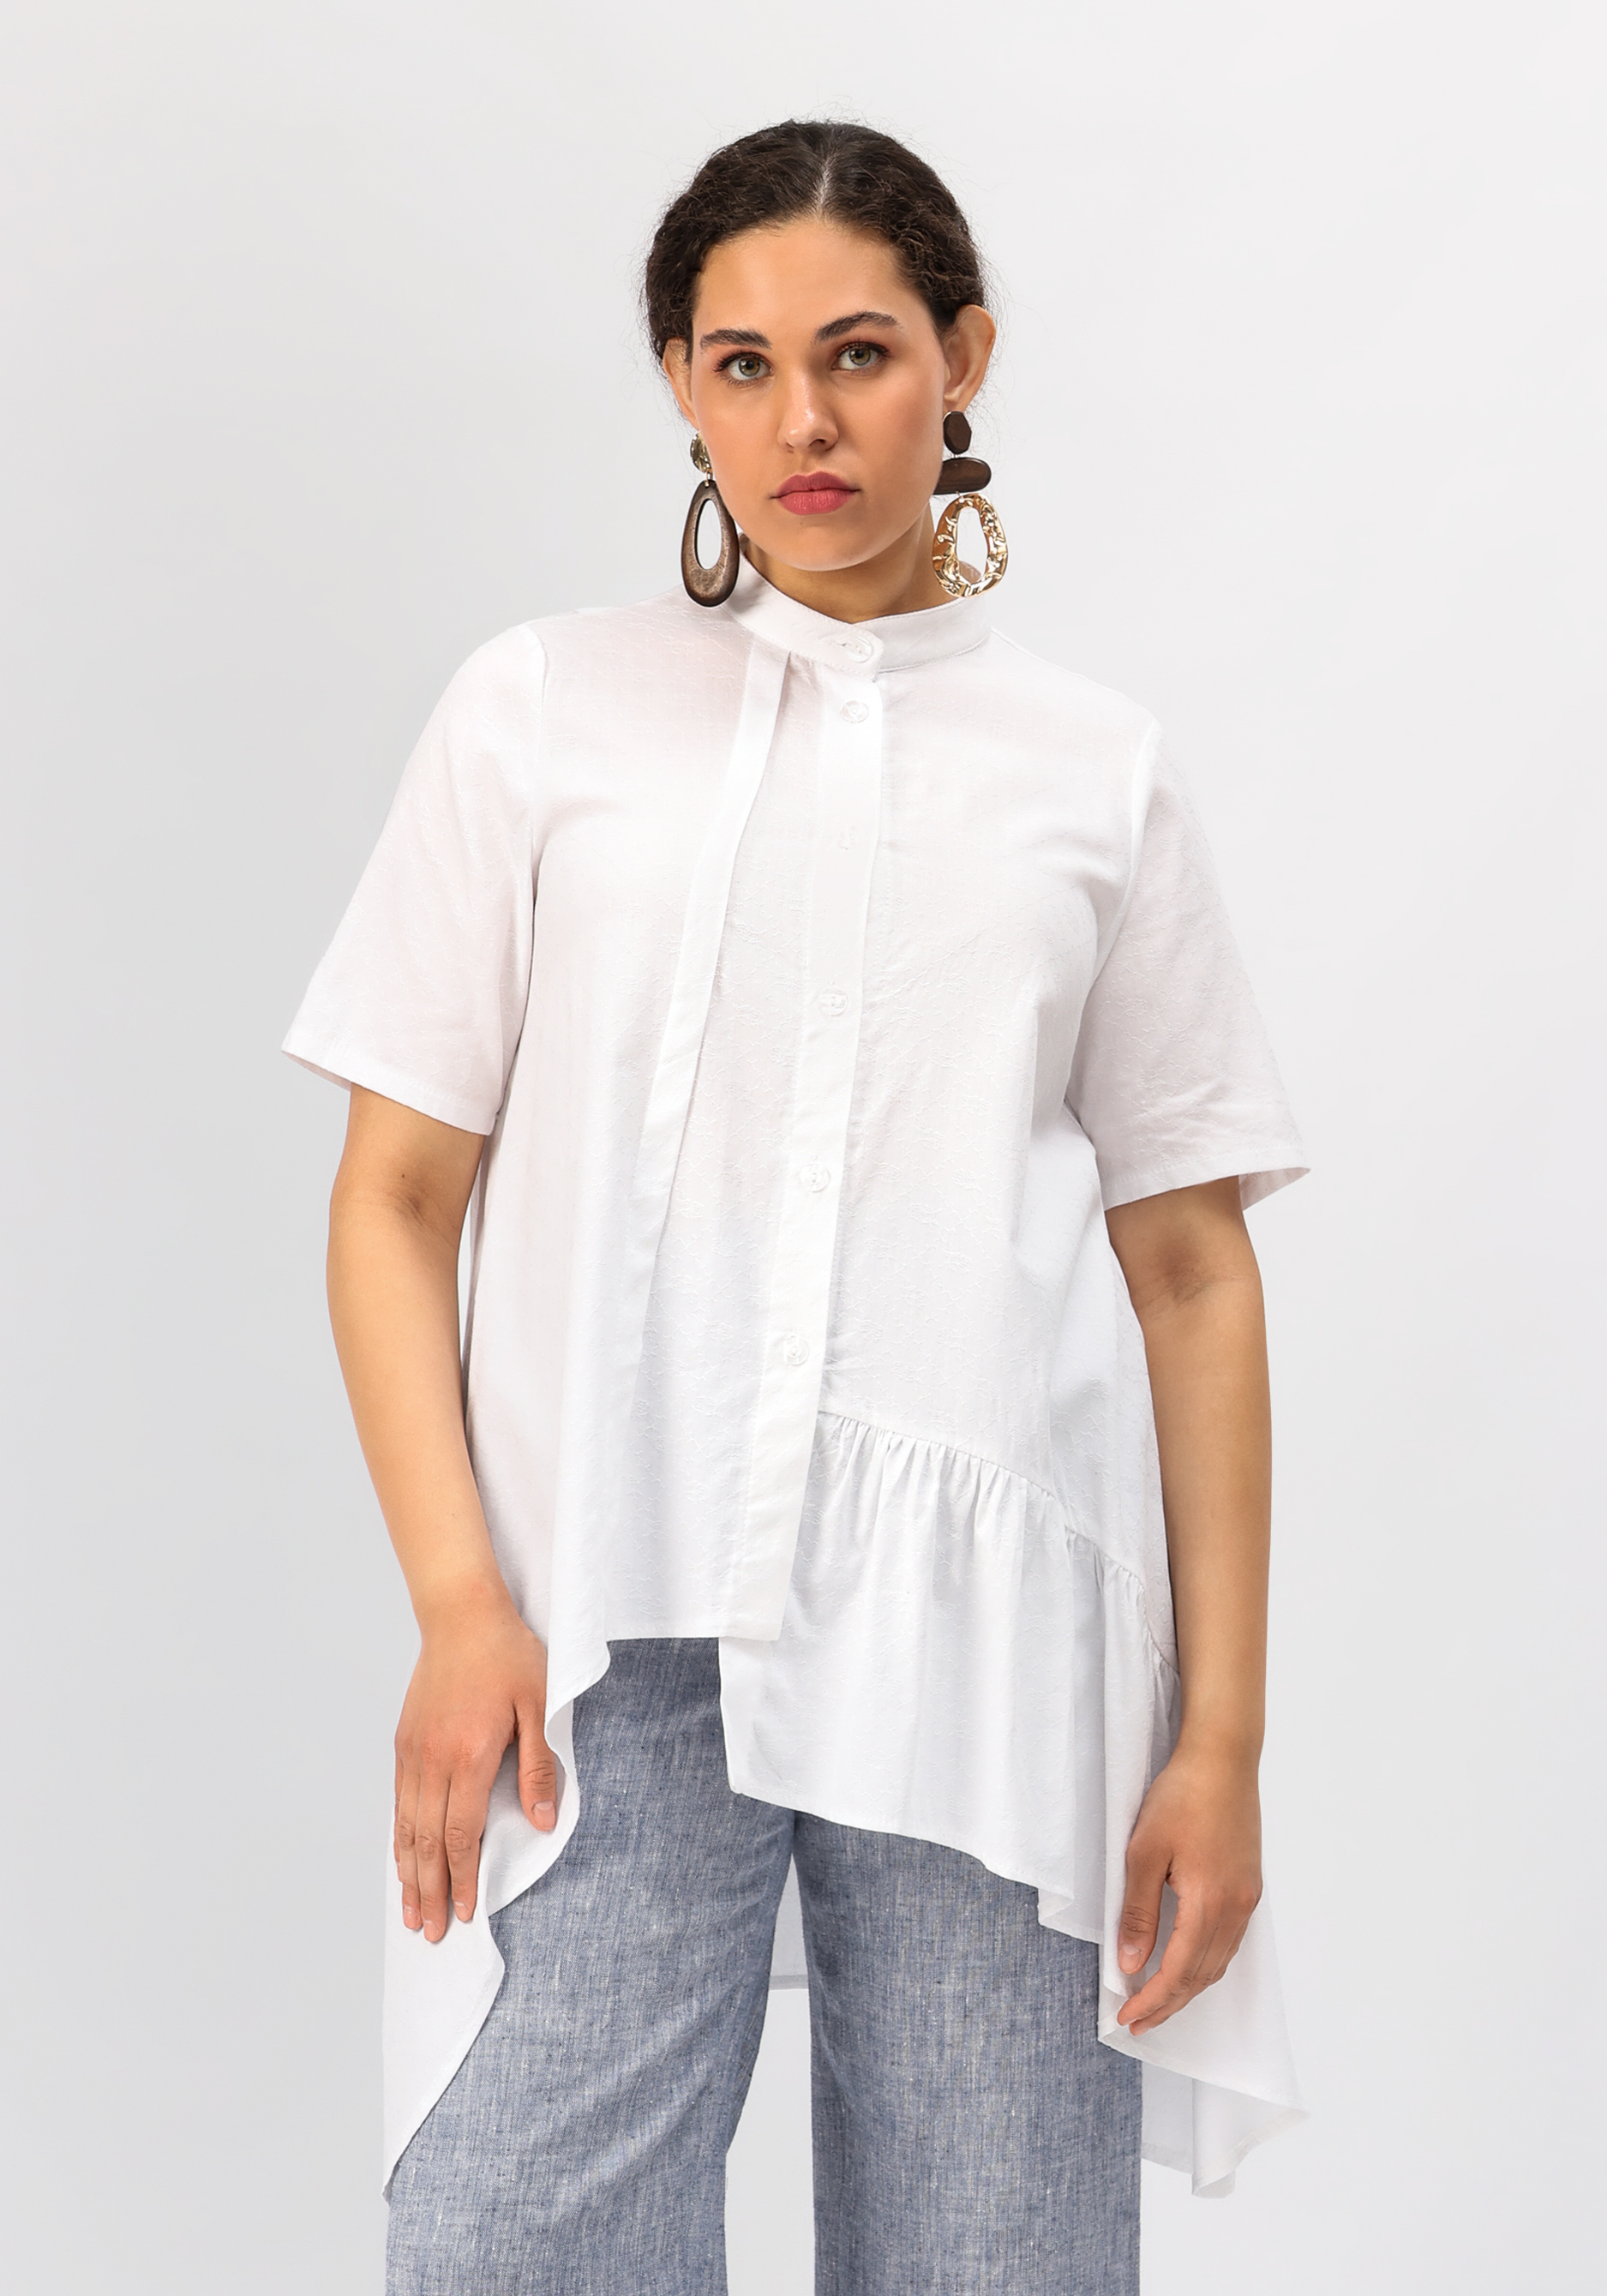 блуза с притачным воланом на сборке Блуза оригинального кроя с воланом